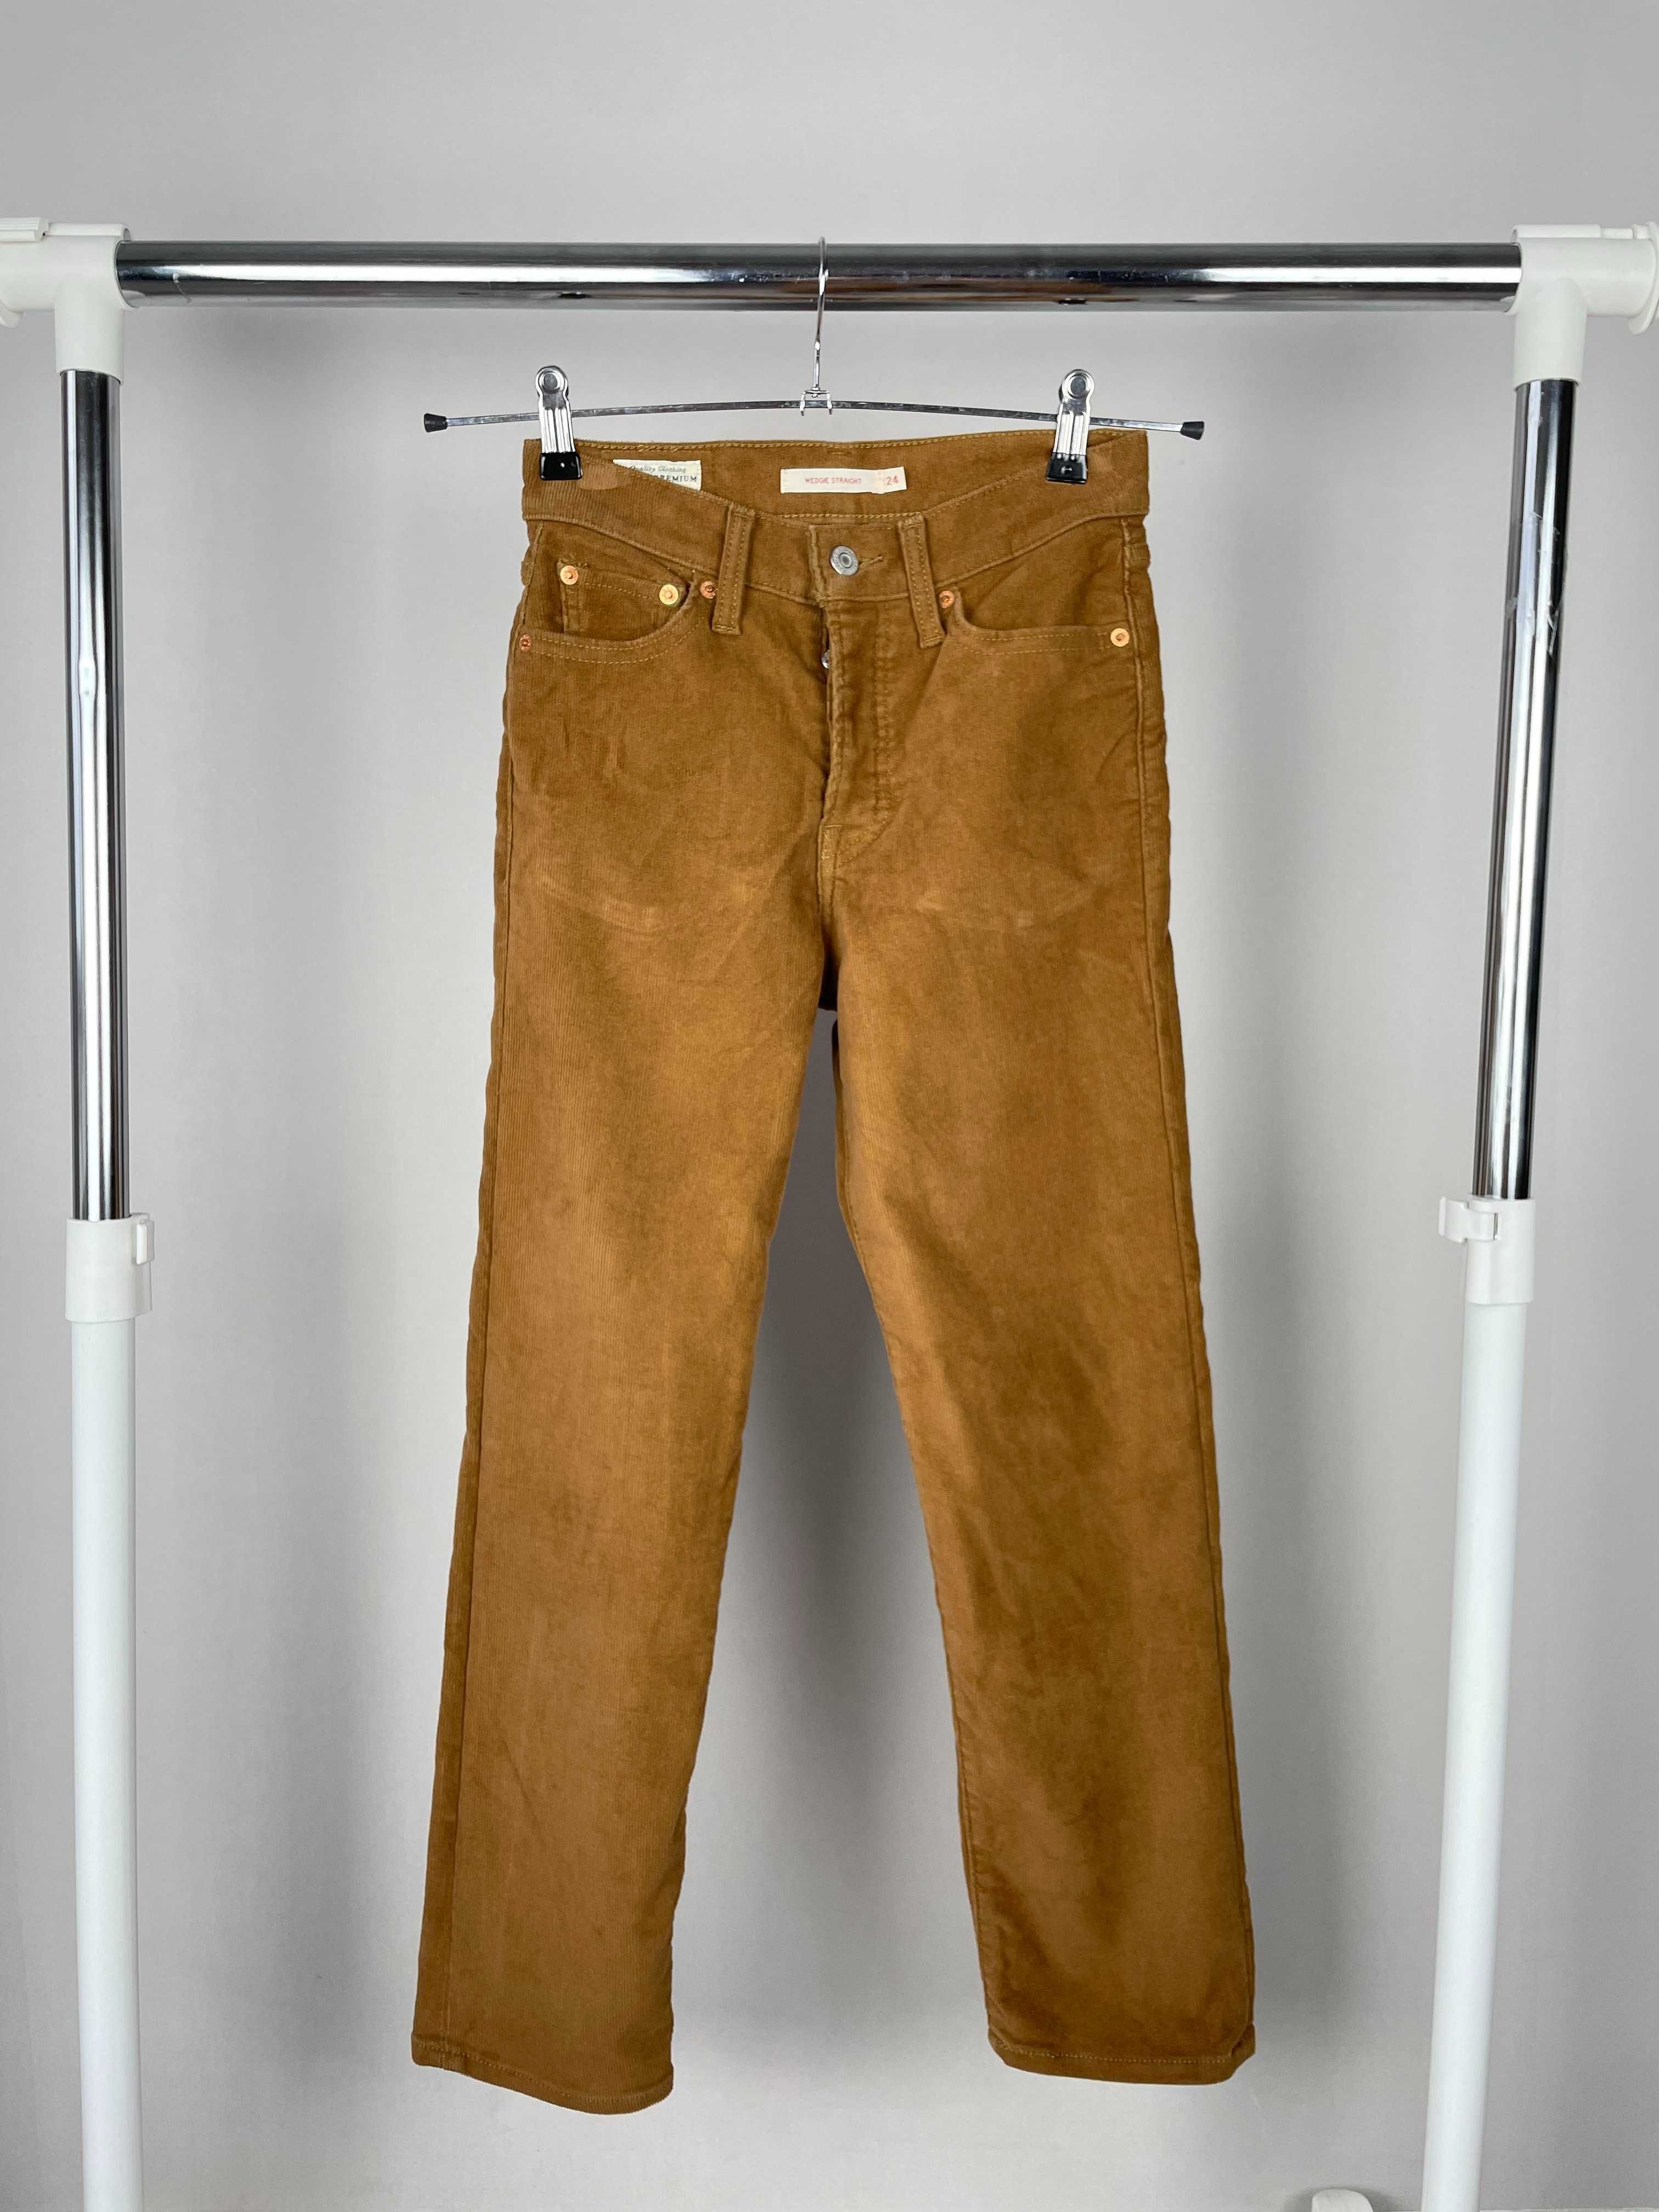 ХС Вельвтові джинси Levi’s premium штаны брюки джинсы оригинал